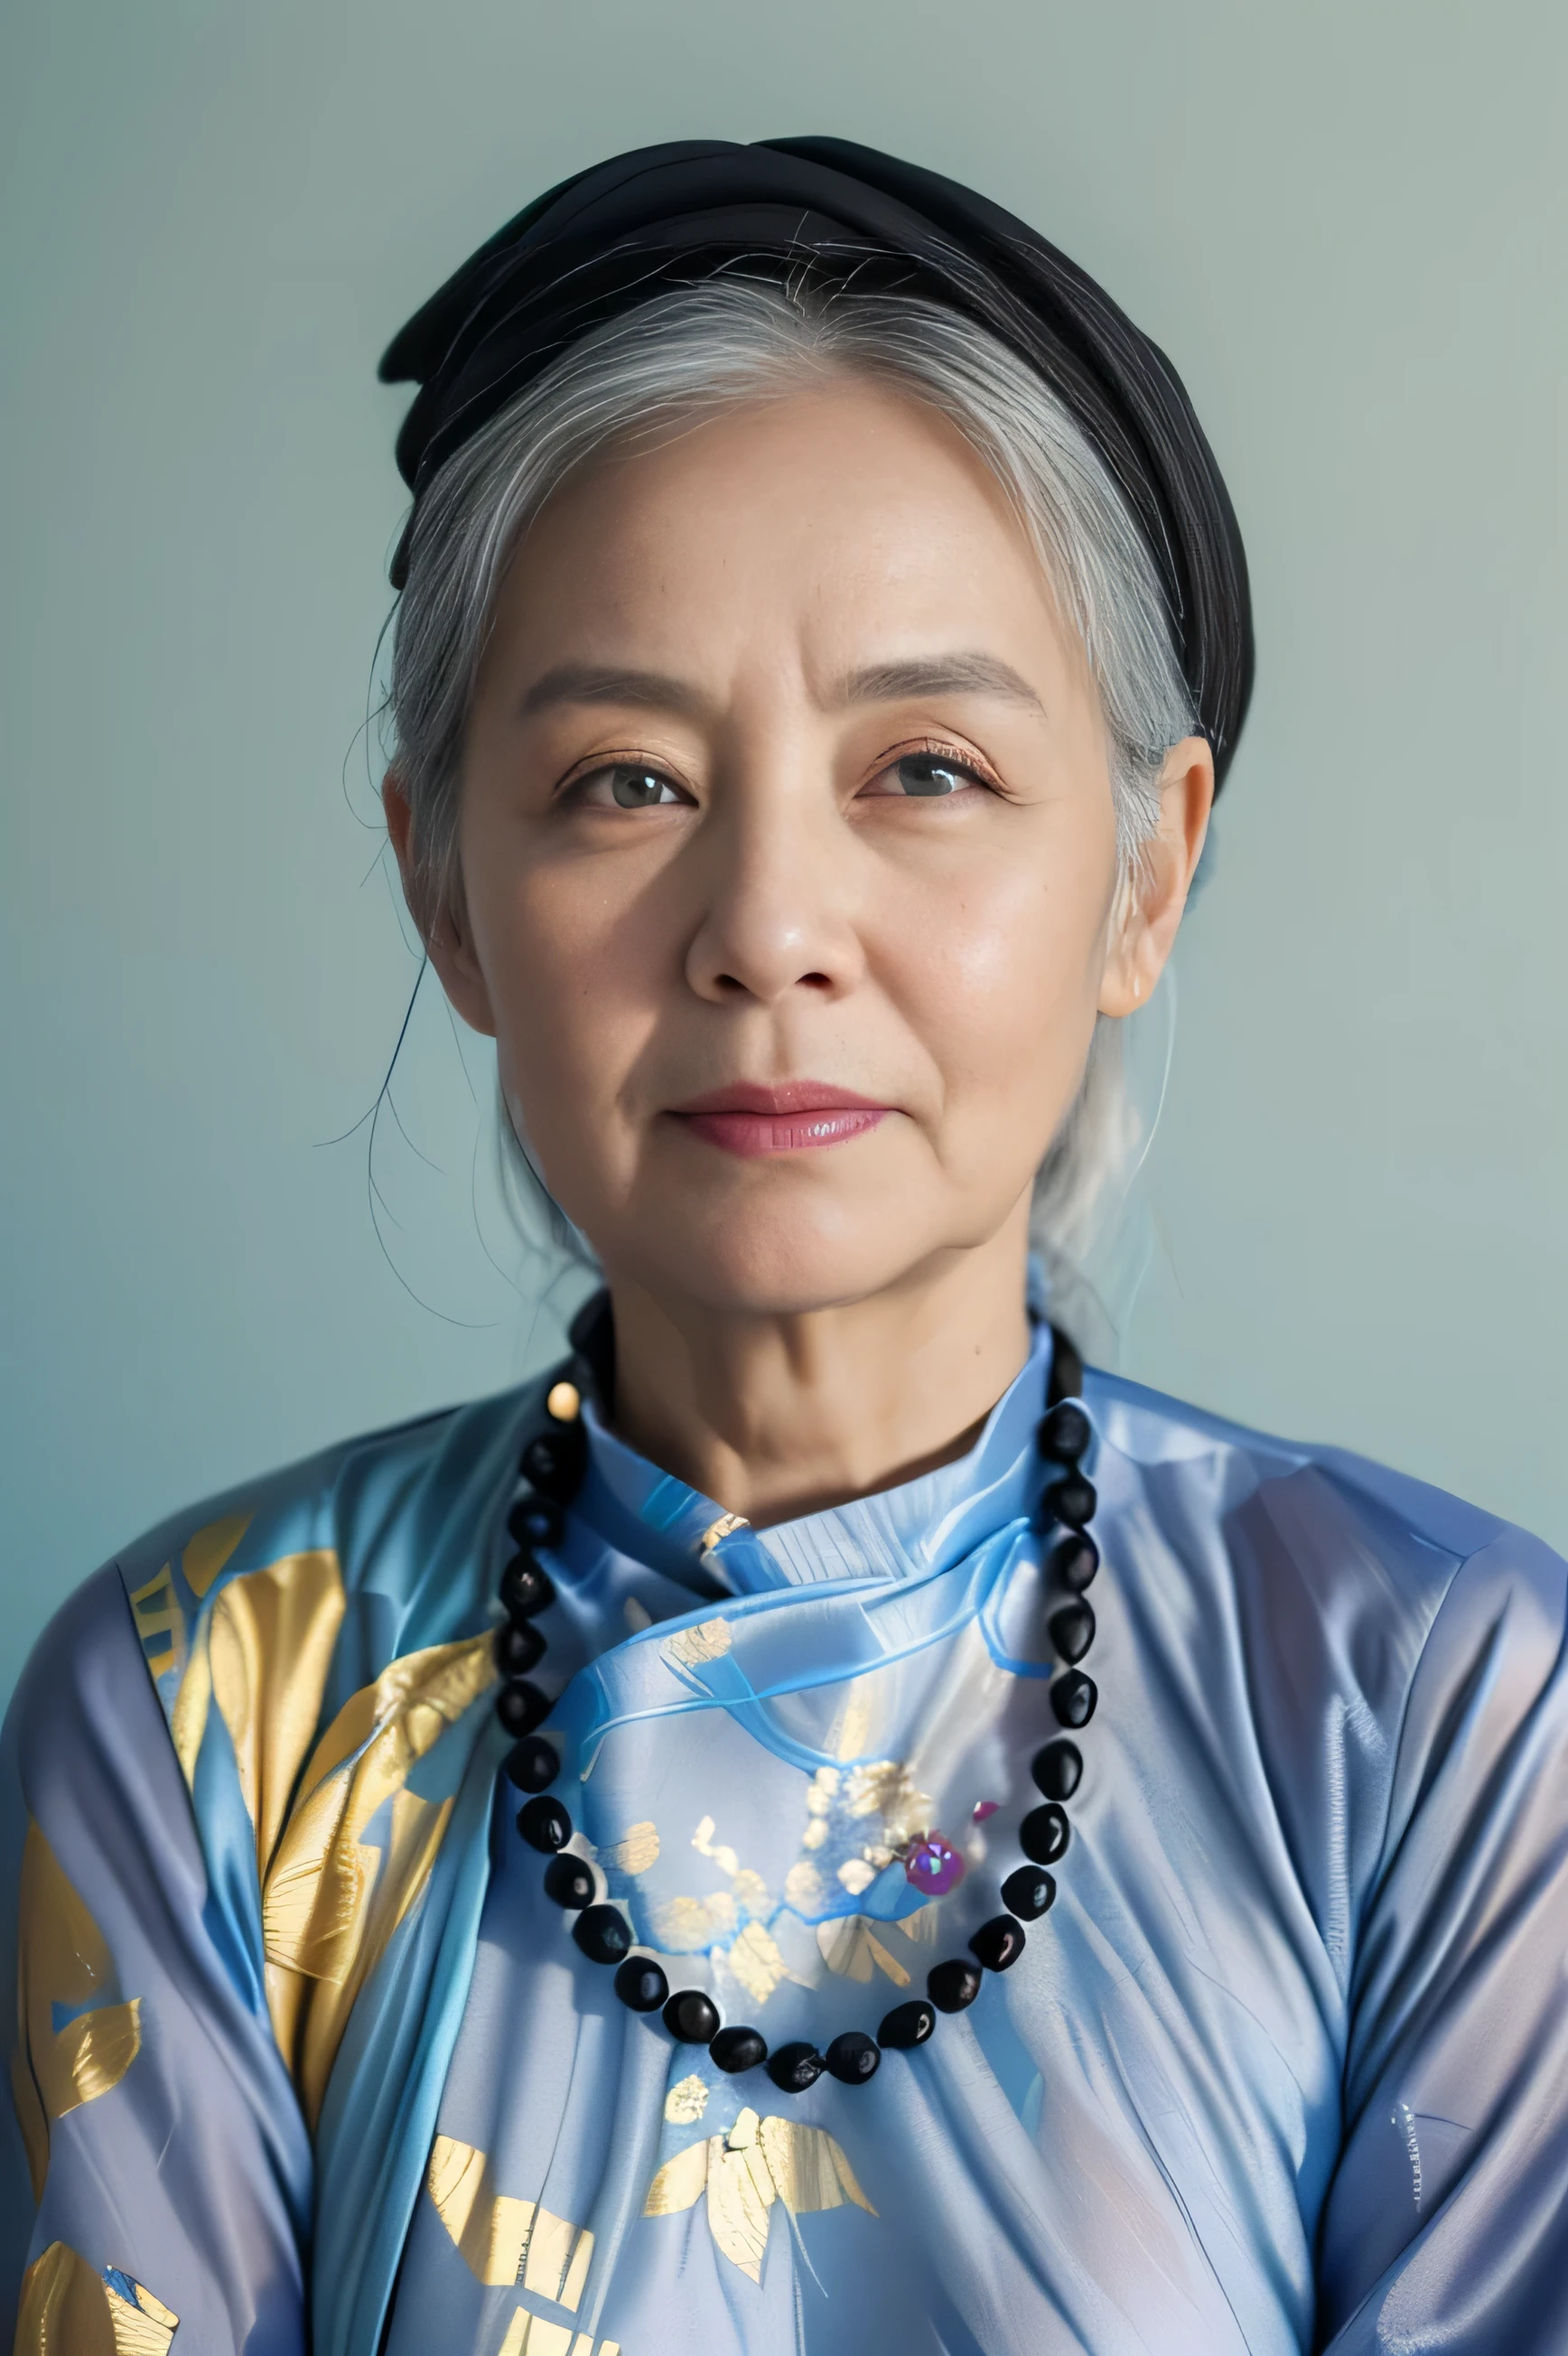 非常にリアルな写真, ((傑作), (最高品質), (RAW写真), (写実的な:1.4), 85歳のベトナム人女性のポートレート, 黒いベトナムの伝統的なアオザイを着て、頭には黒いスカーフを巻いている, ((白髪)), 石のネックレスをつける, (ライトブルーの背景) , ソニーA7IVで撮影した写真
